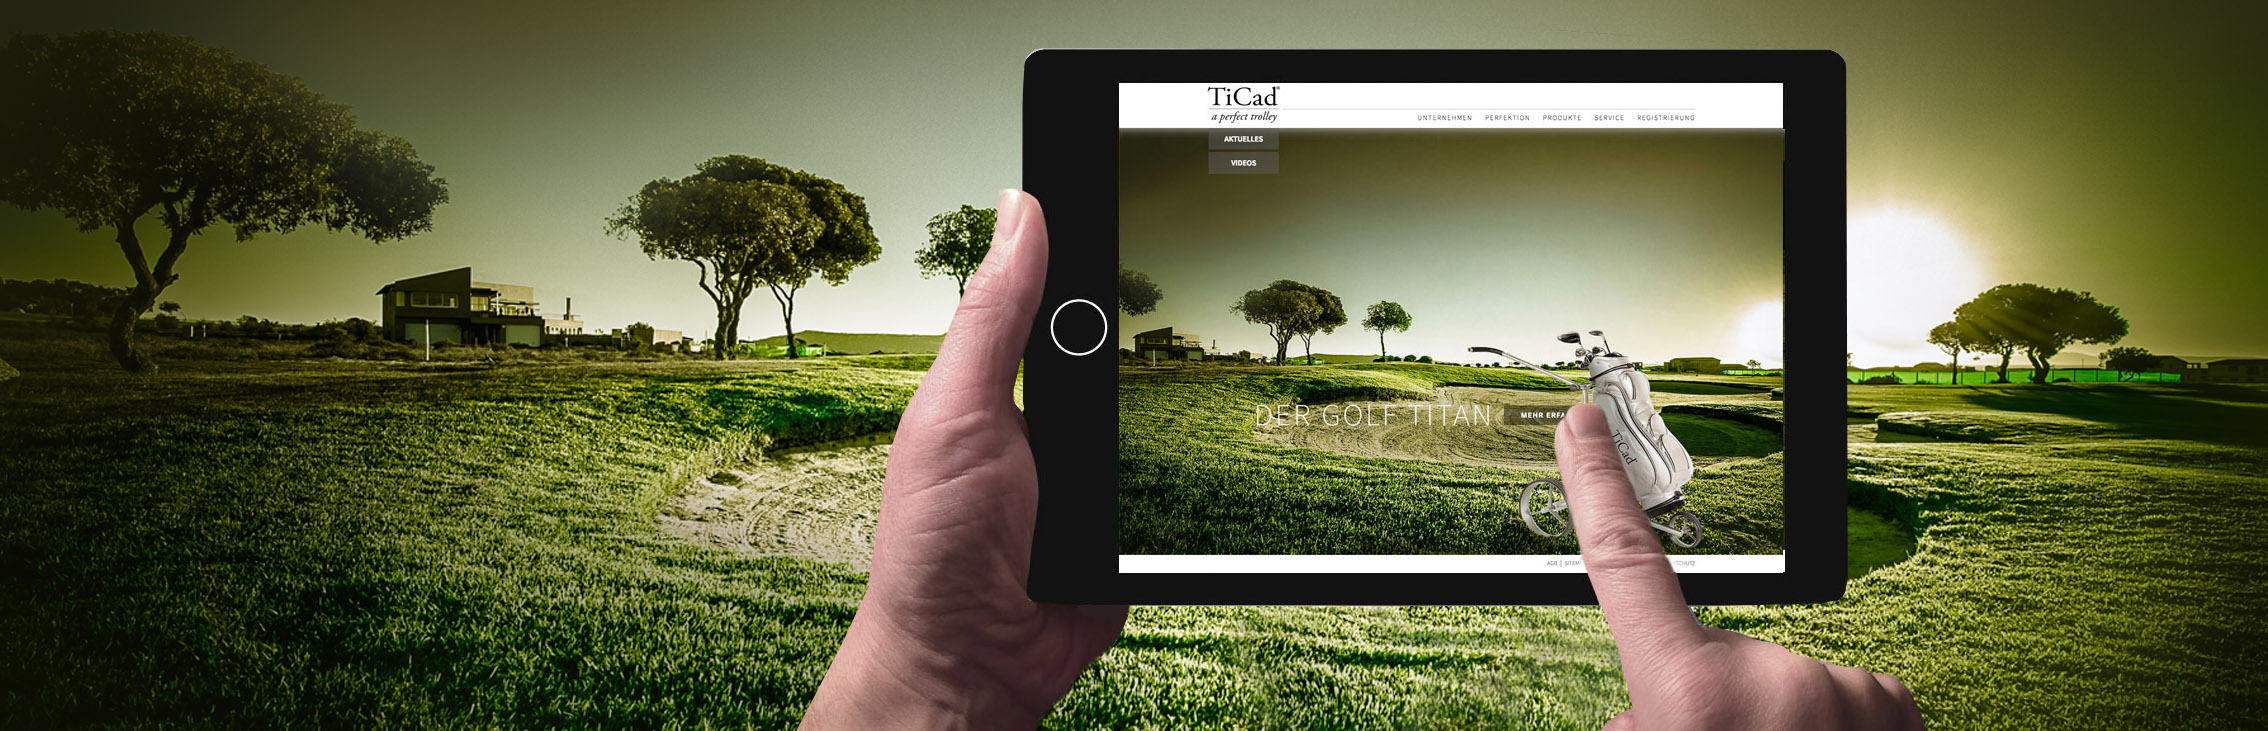 TiCad Homepage Slider Startseite Der Golf Titan